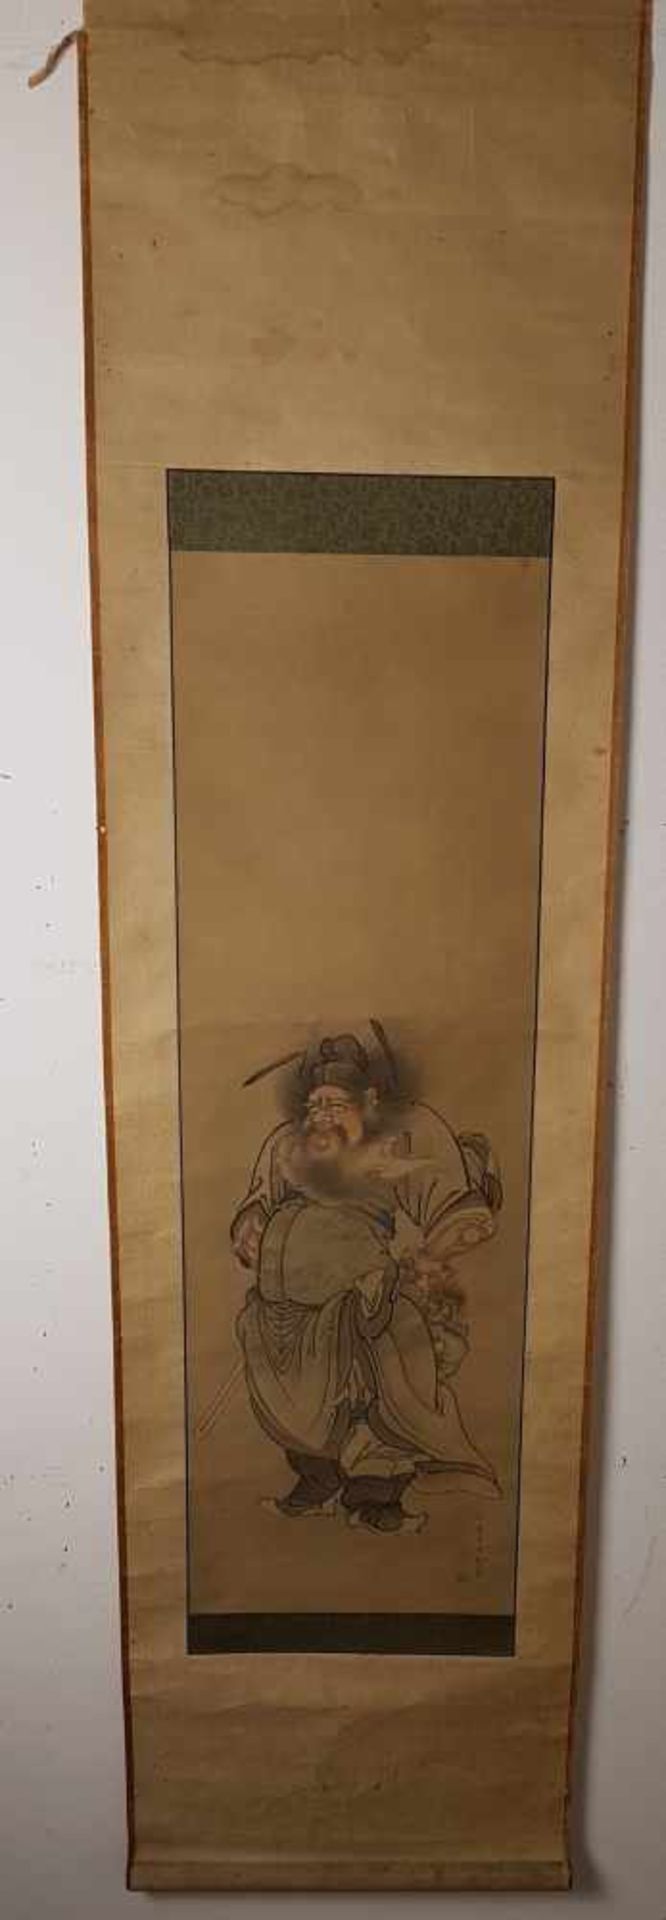 Chinesisches Rollbild - Tusche und Farben auf Seide, der Dämonenbezwinger Zhong Kui, in chinesischer